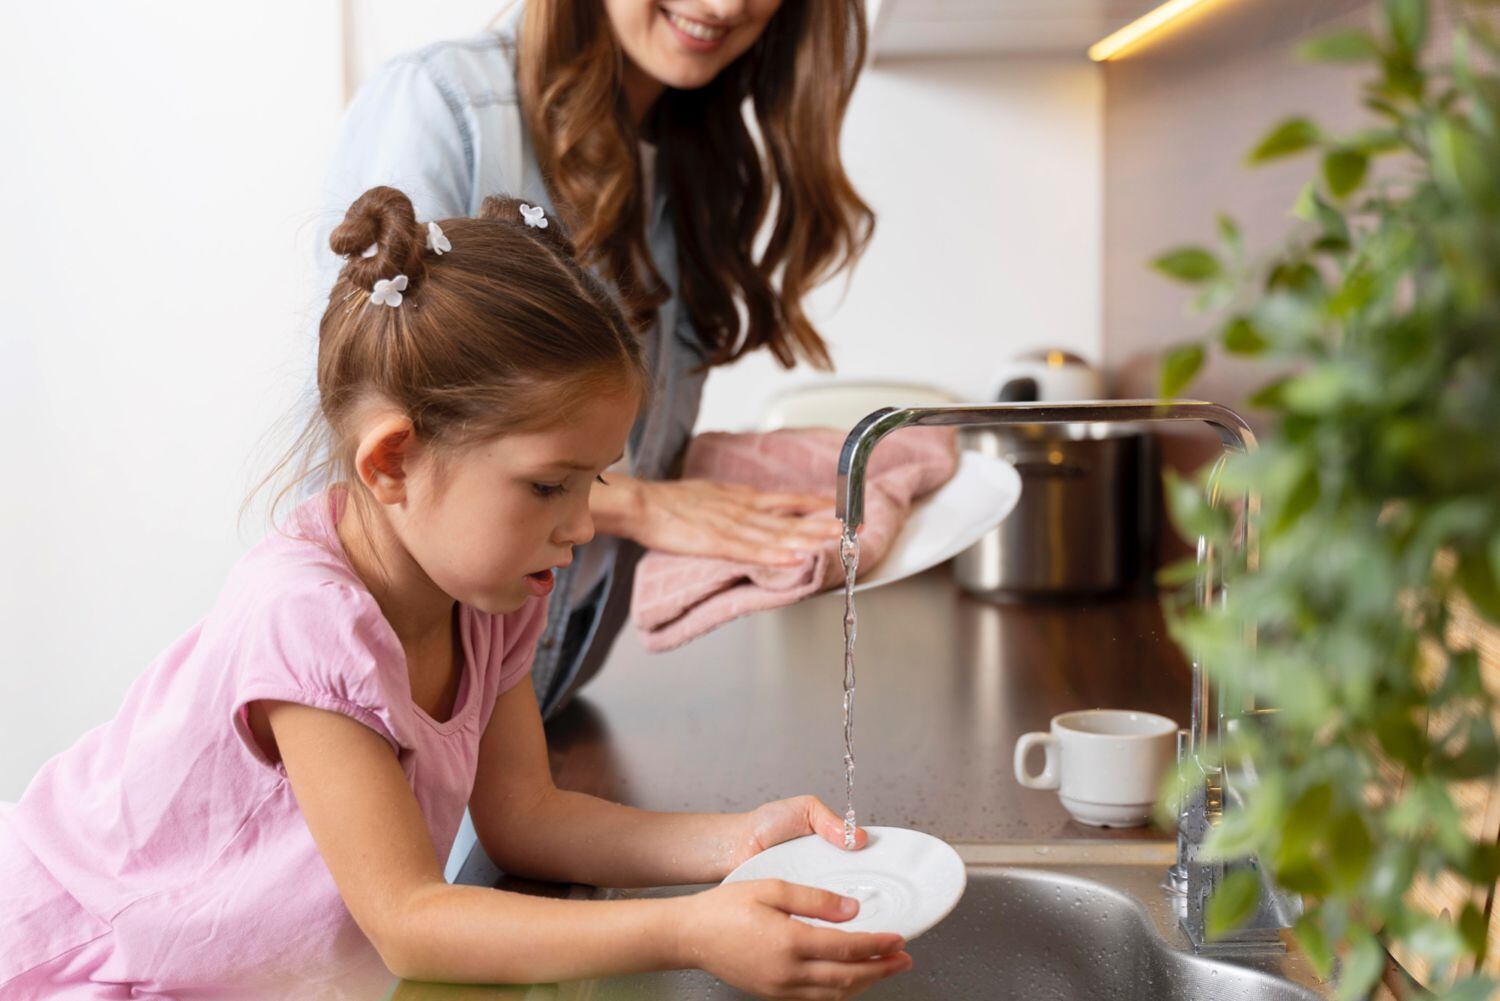 Anima a tus hijos a participar de la limpieza del hogar. Esto les brindará habilidades y conocimientos para cuando sean adultos.